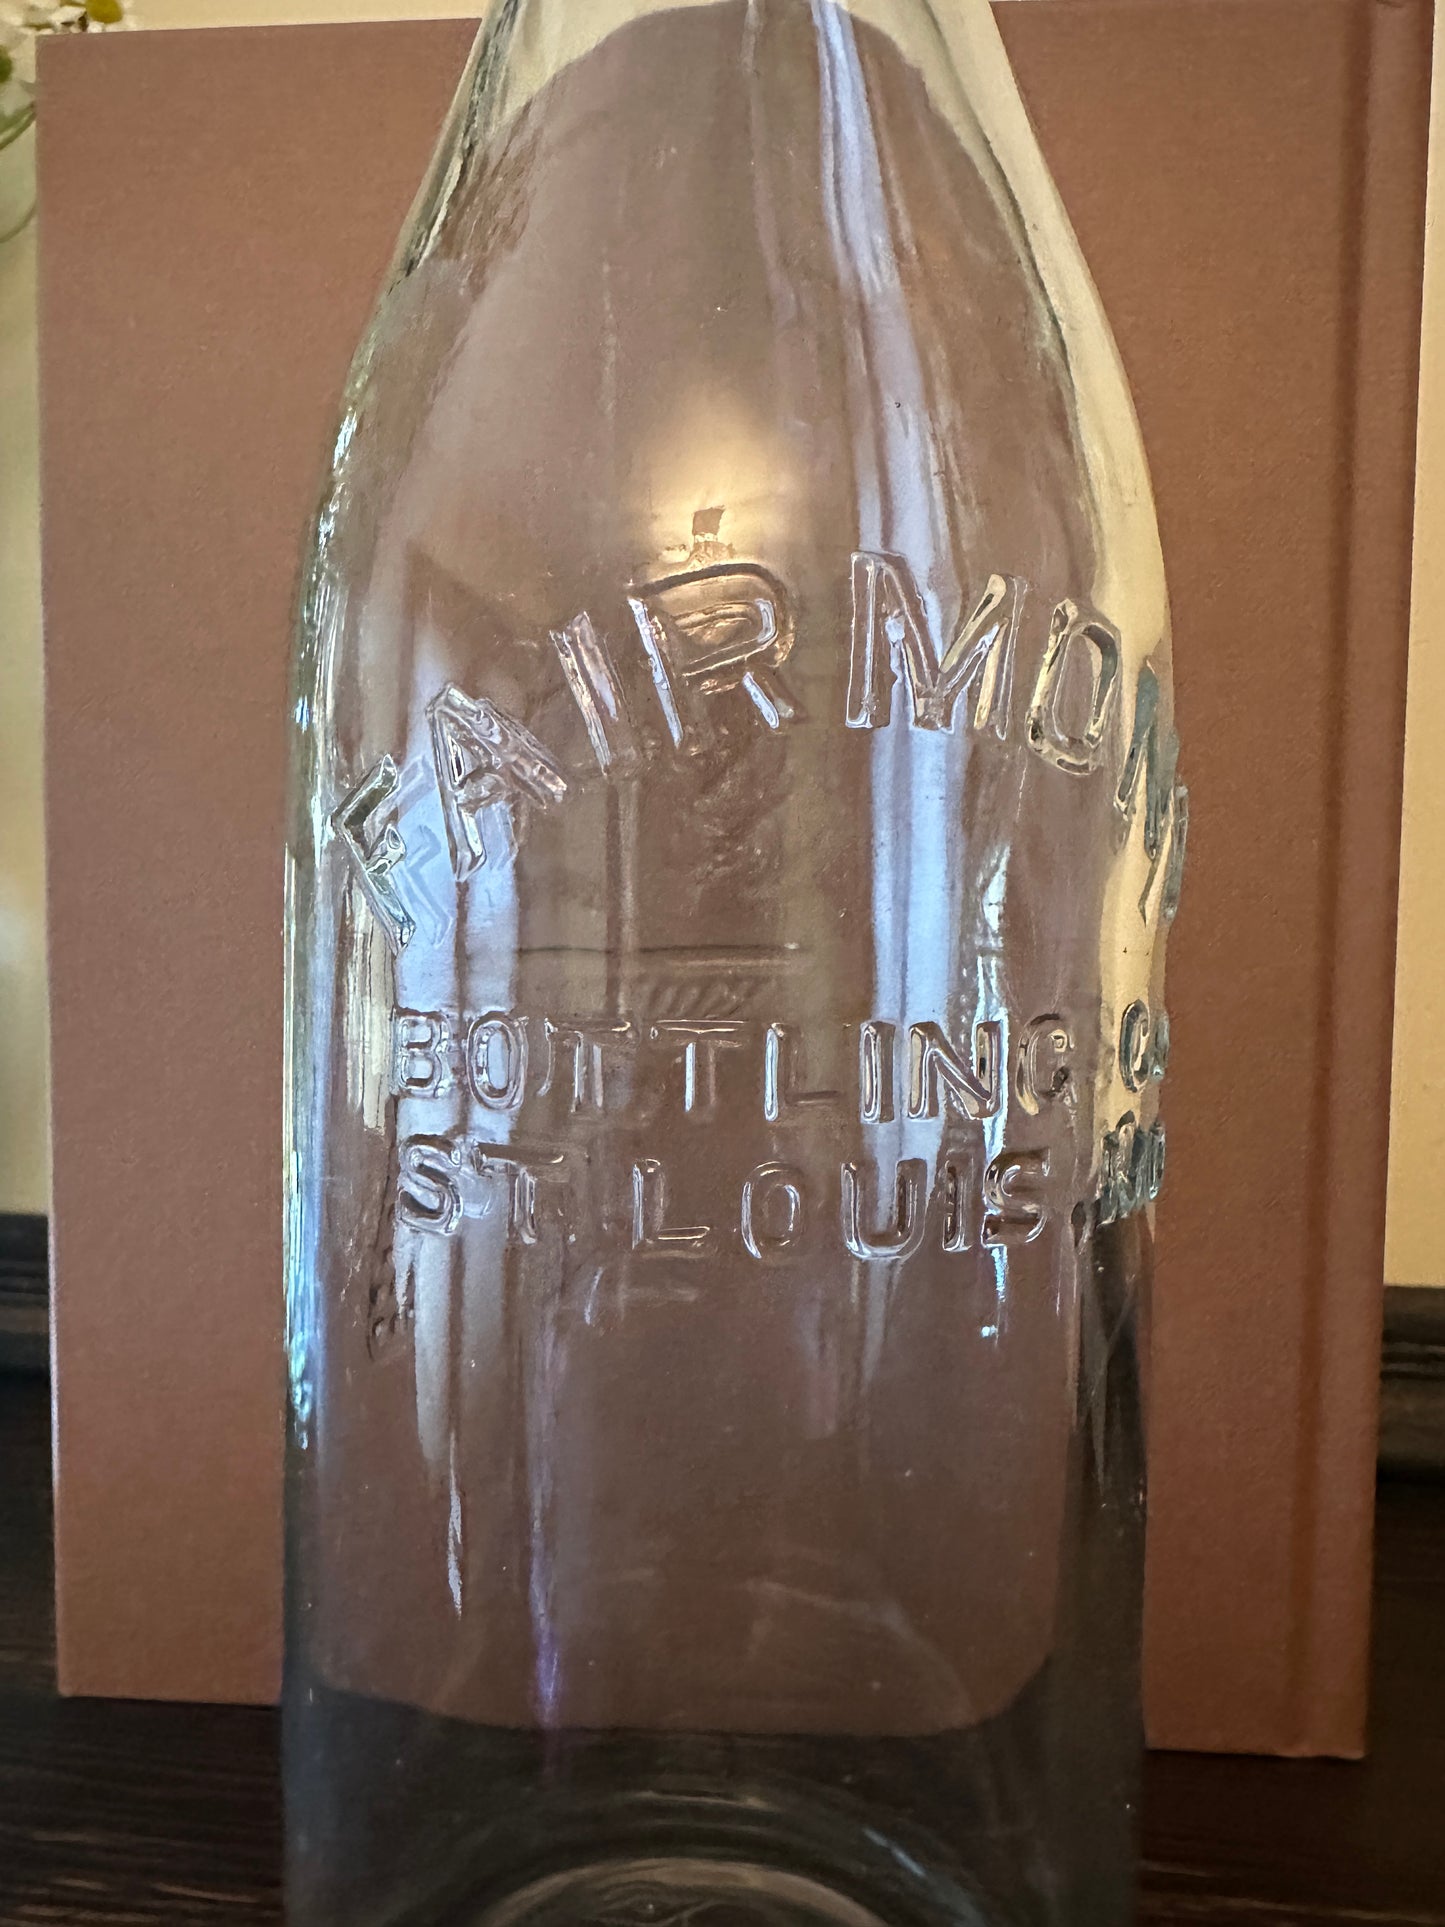 Fairmont Bottling Co. -  St. Louis, Mo